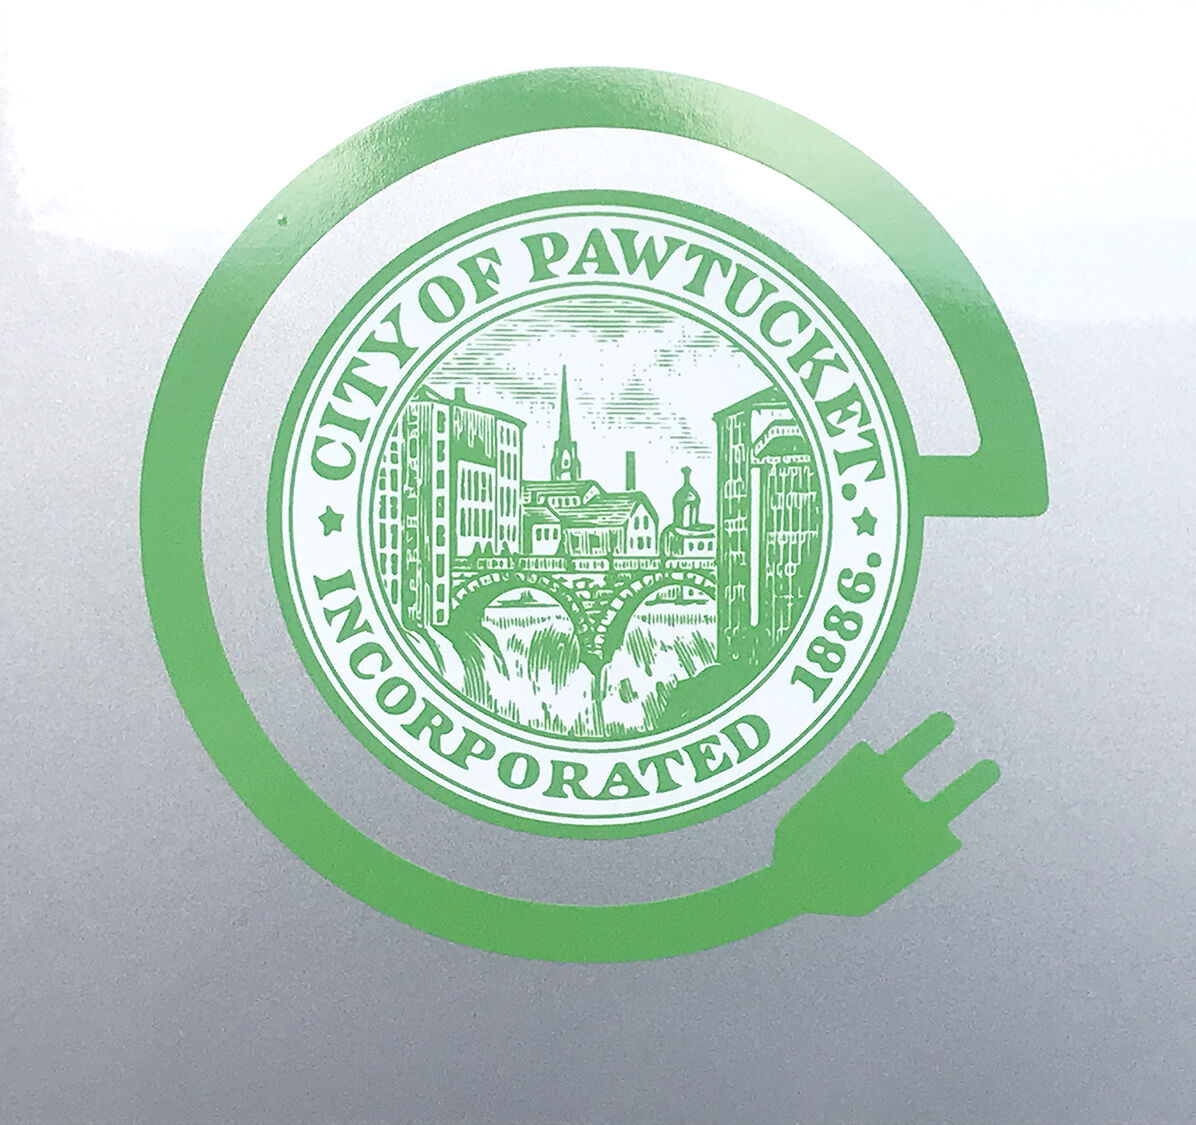 The green logo